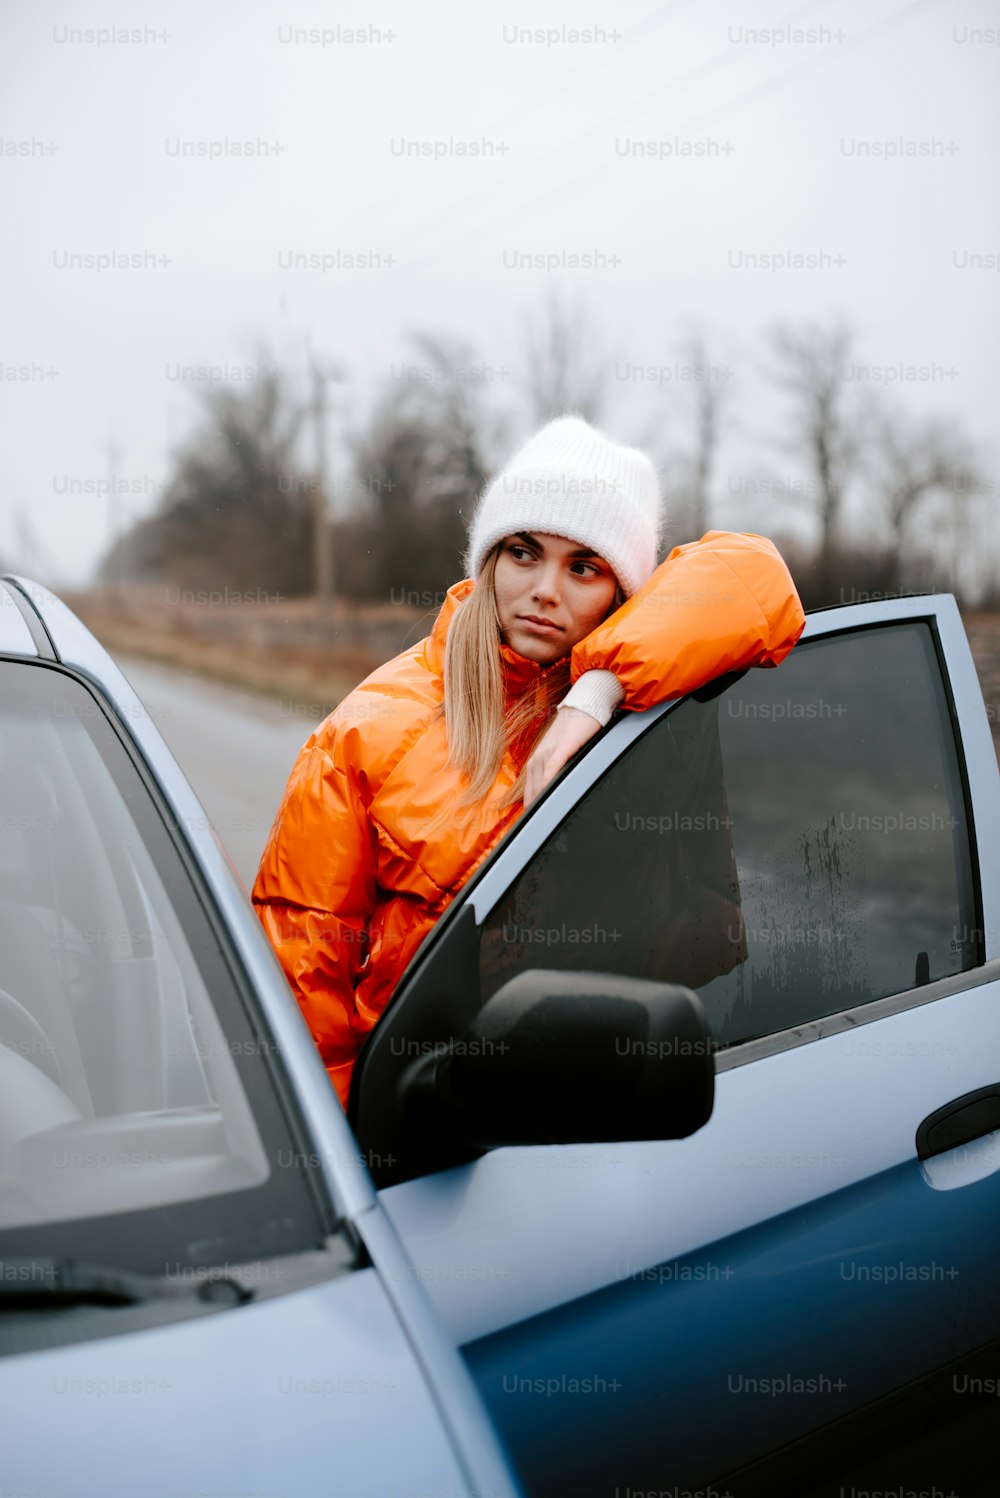 차창 밖으로 기대어 있는 주황색 재킷을 입은 여자